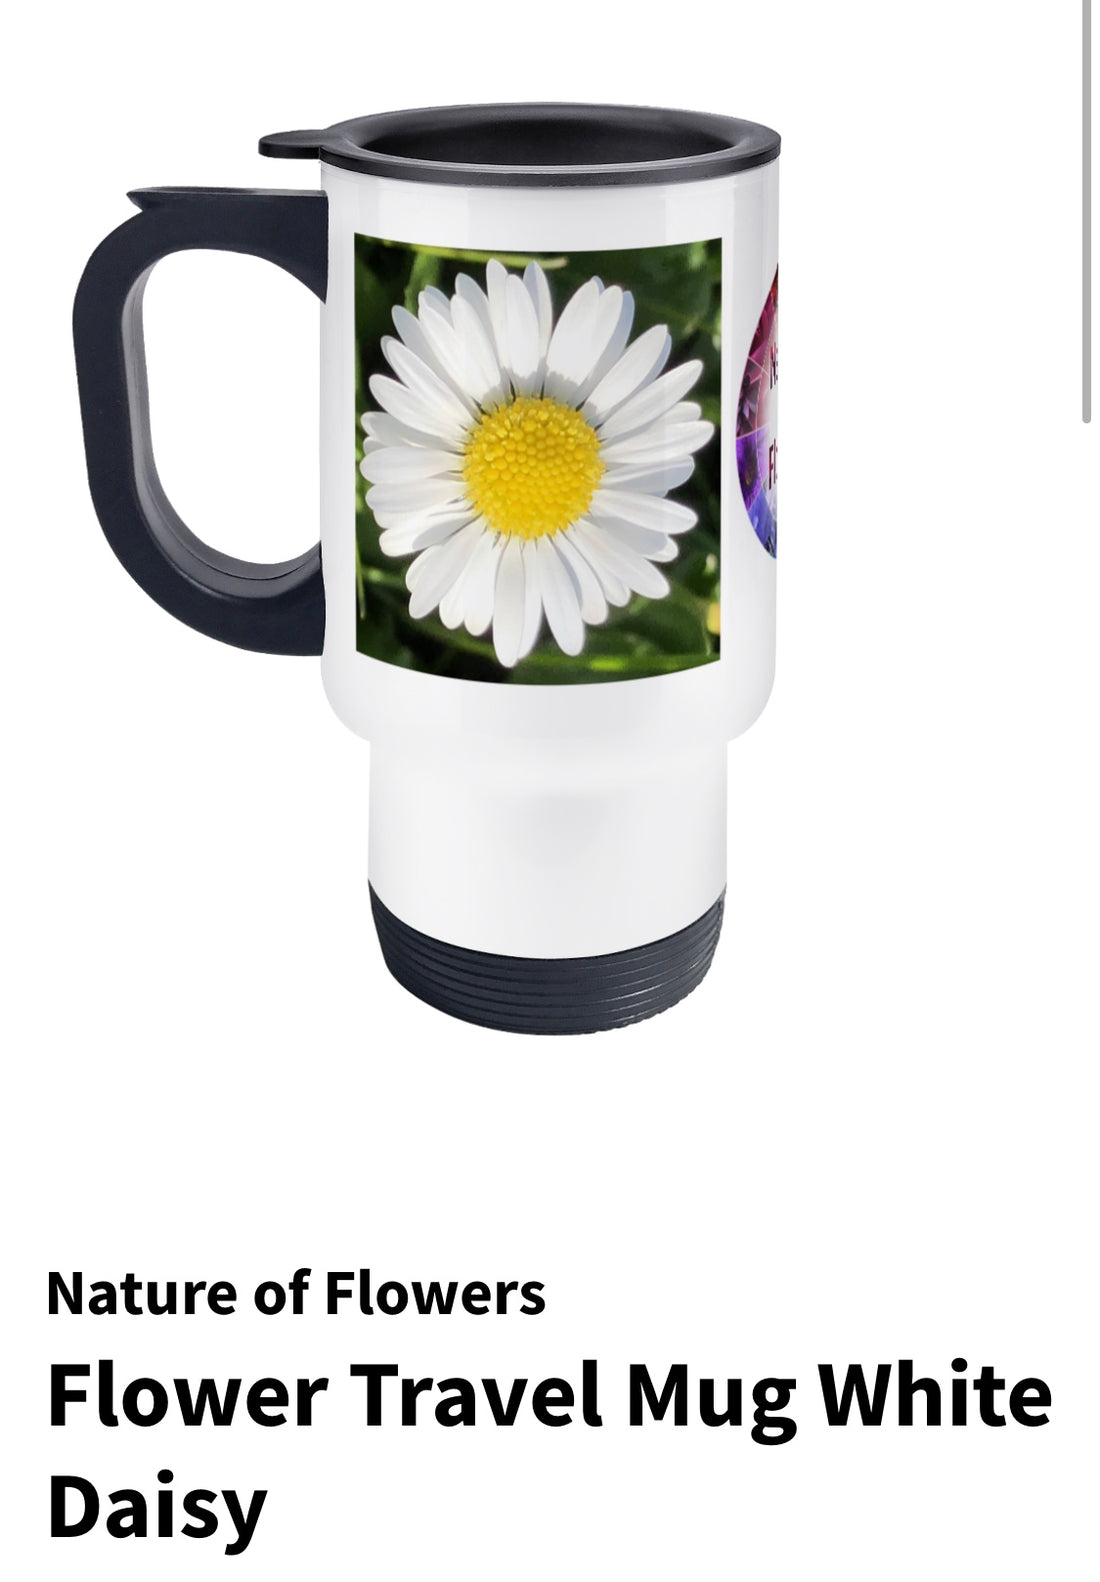 Flower Travel Mugs